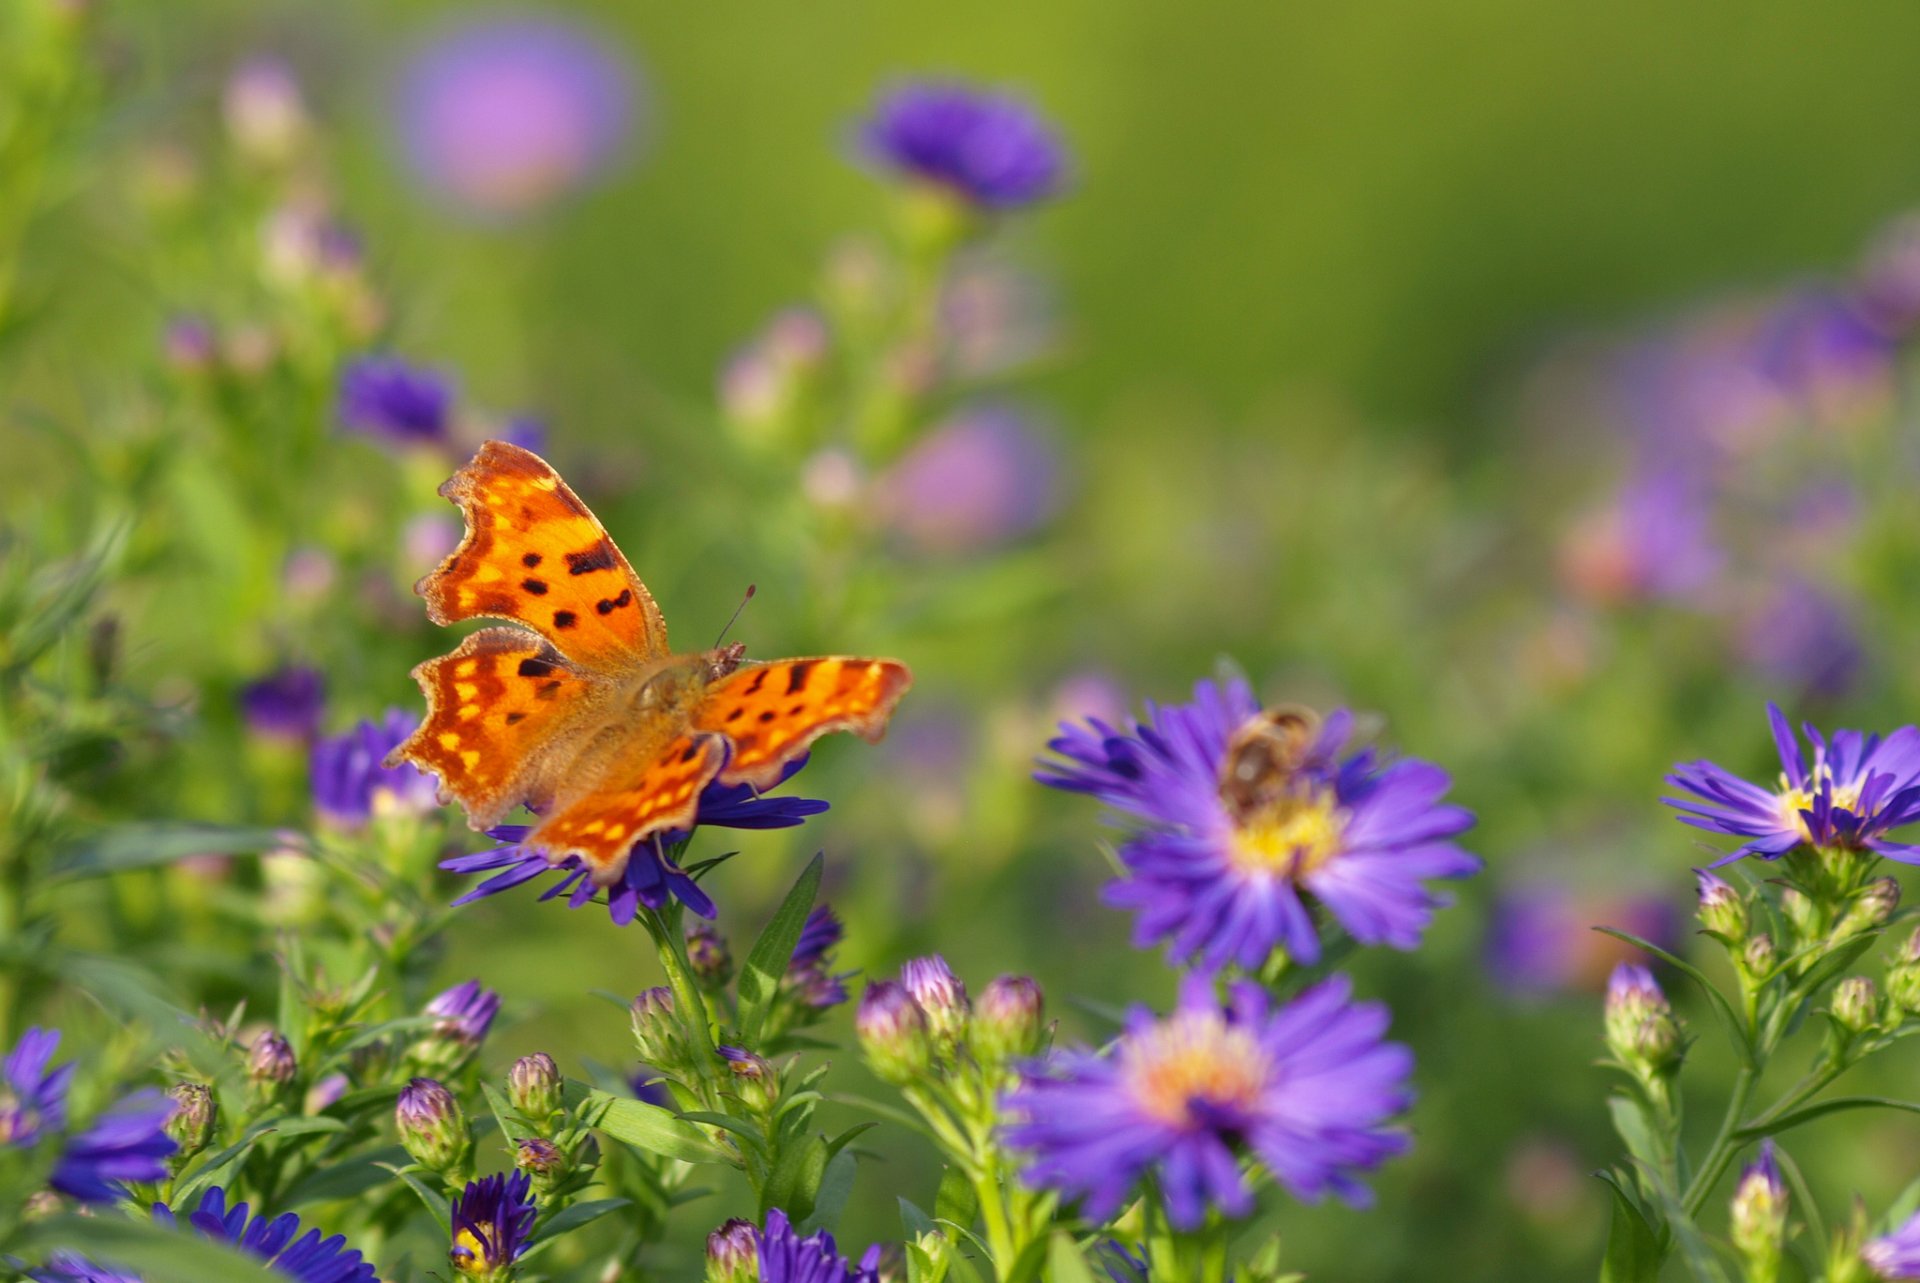 Фото летнего луга с цветами и бабочками